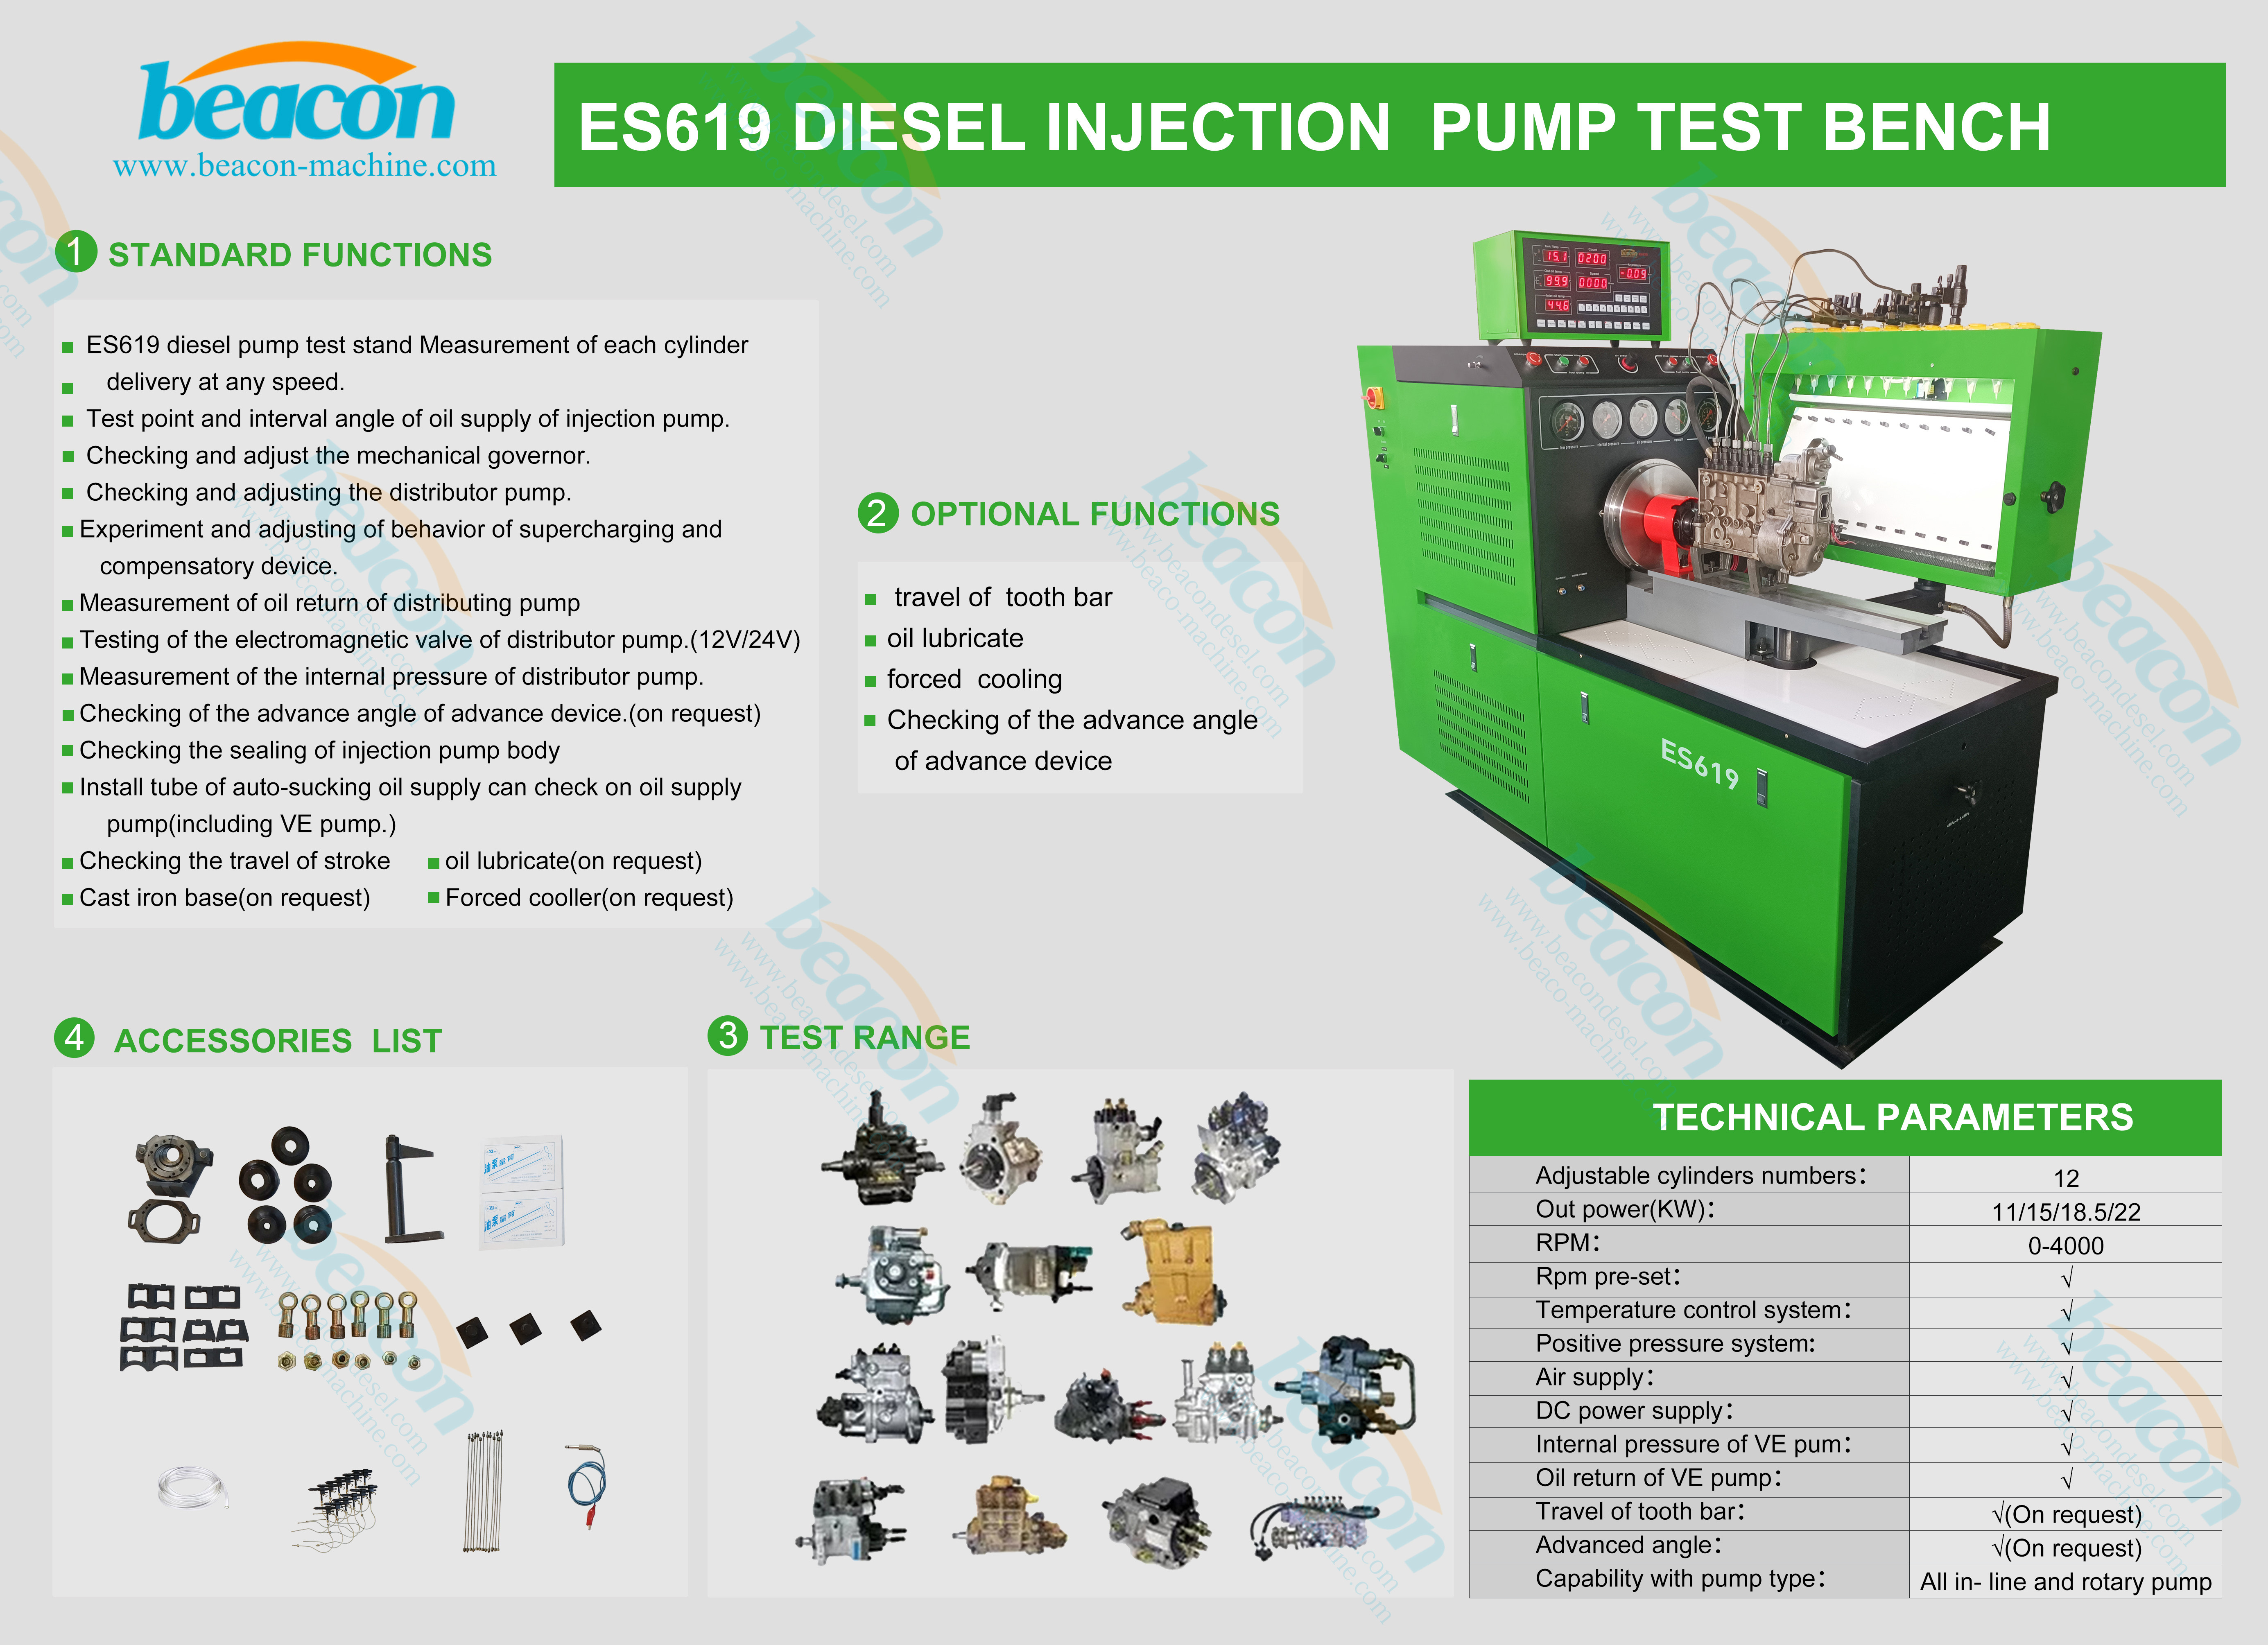 Beacon BCS619 máquina de servicio diesel DTS619 banco de pruebas de bombas de inyección diesel convencionales ES619 con 12 cilindros